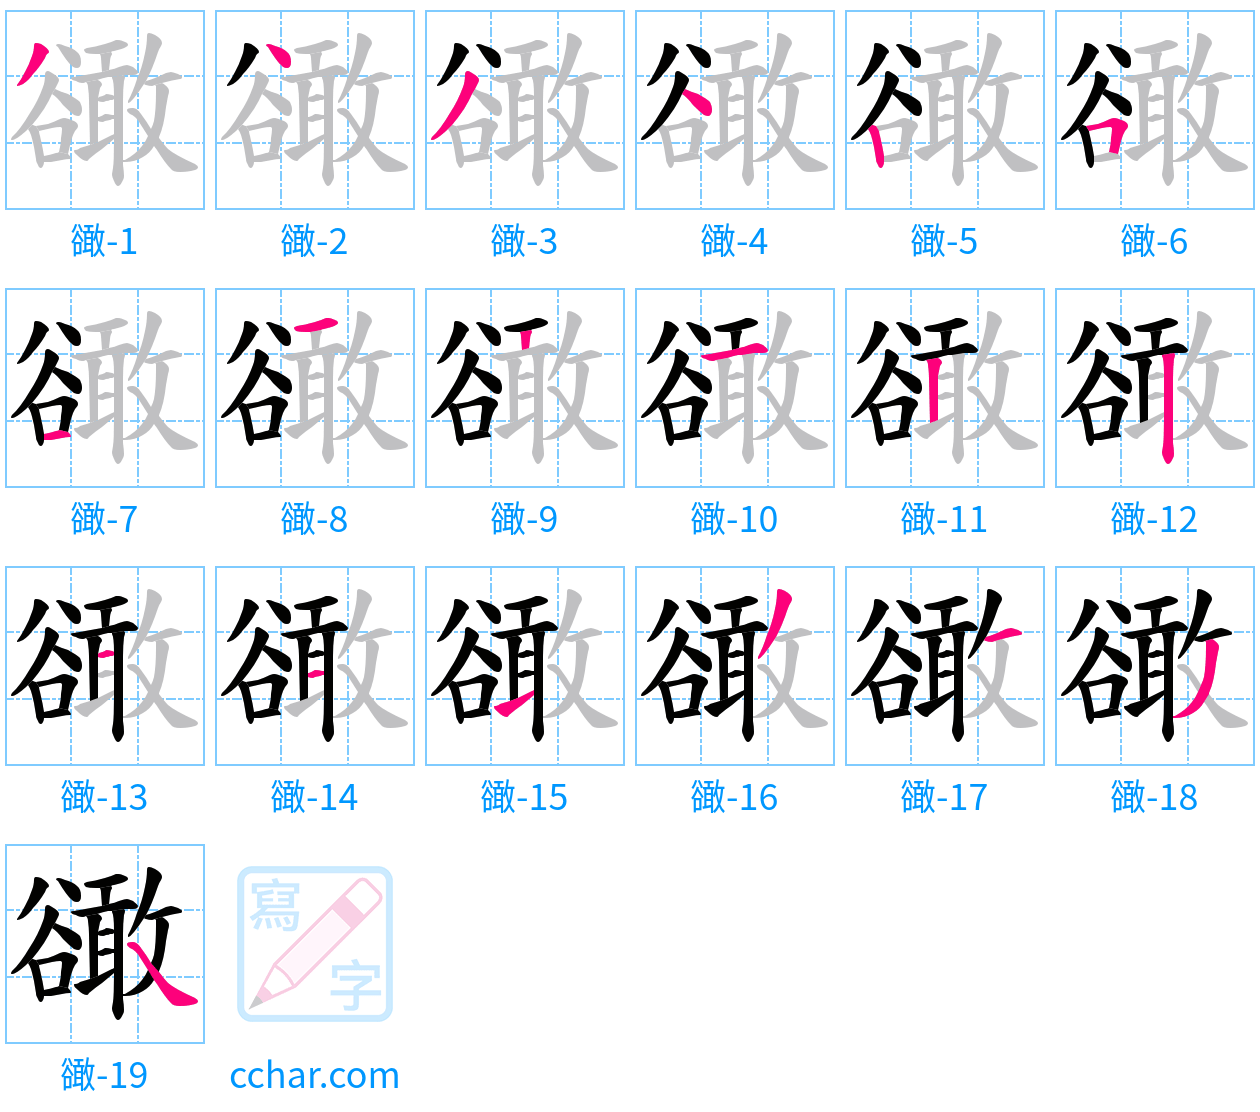 豃 stroke order step-by-step diagram